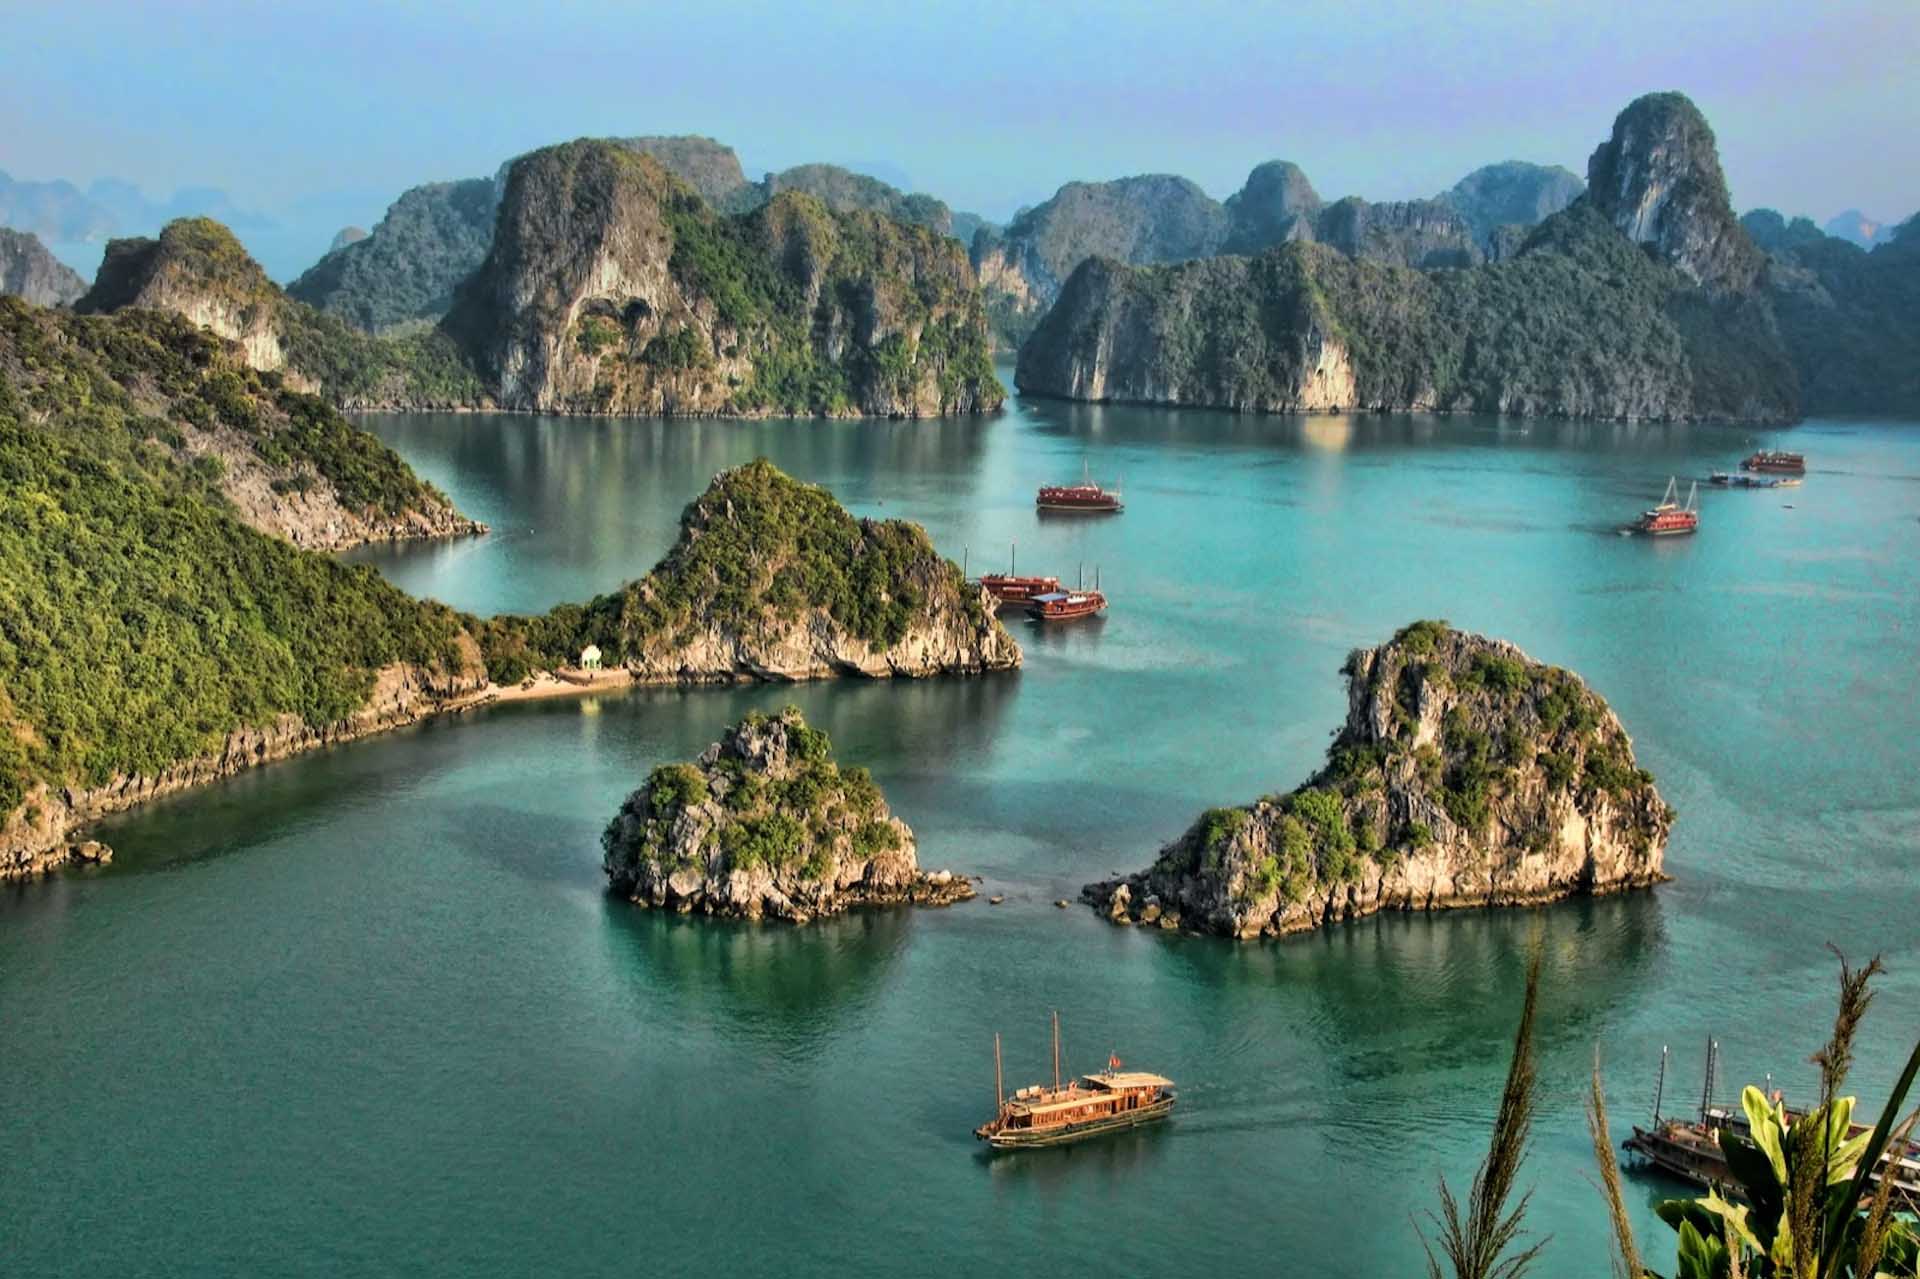 Kong Skull Island Vietnam